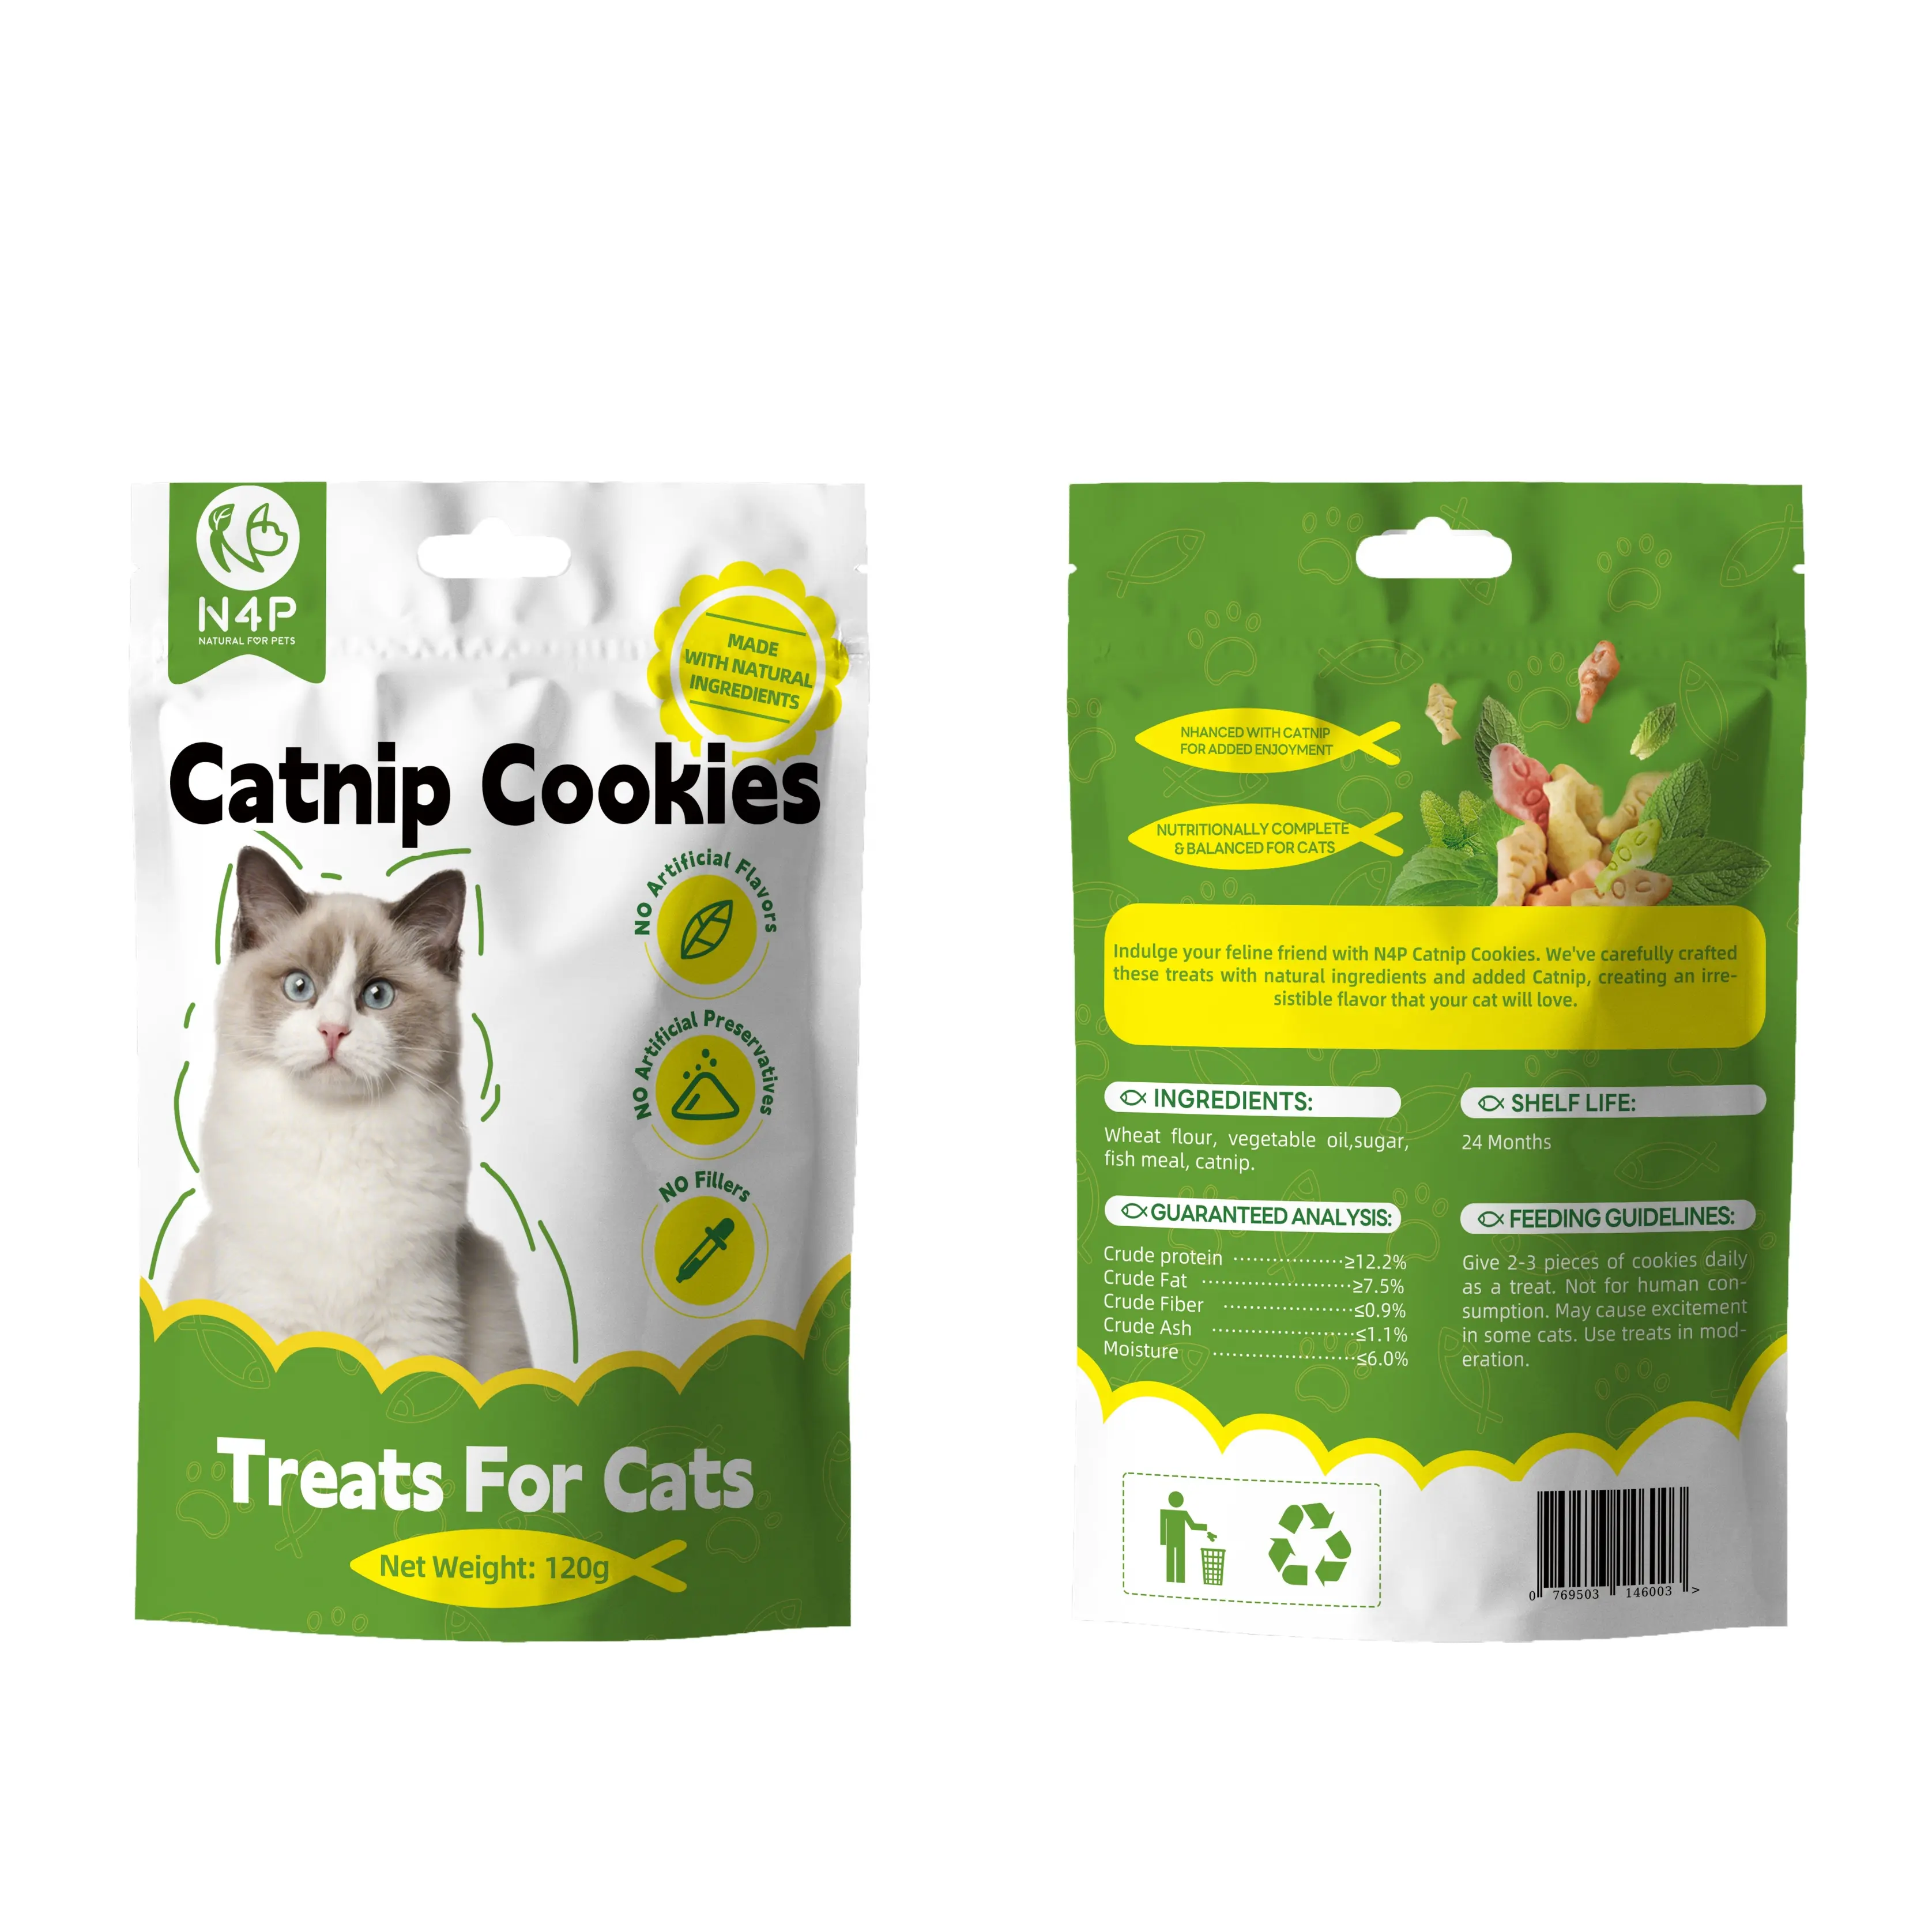 ขนม N4P แมวทำจากแคทนิปปลอดภัยสำหรับแมวขนมปลอดภัยสะอาดนุ่มอร่อย